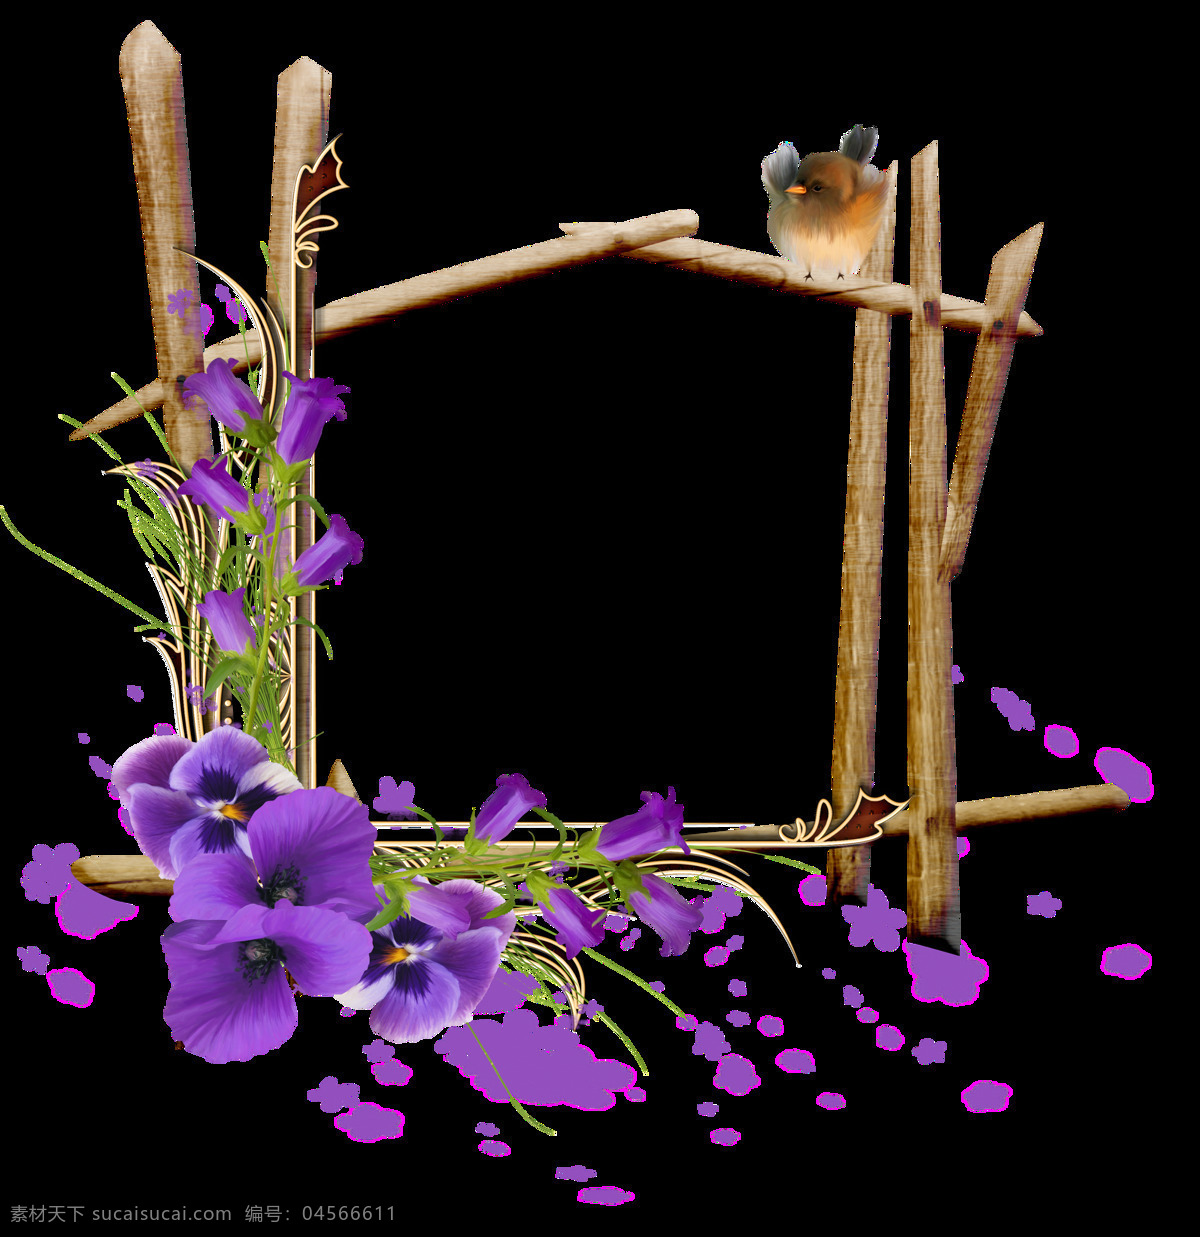 美丽 鲜花 树枝 框架 透明 紫色 碎花 小鸟 藤蔓 透明素材 免扣素材 装饰图片